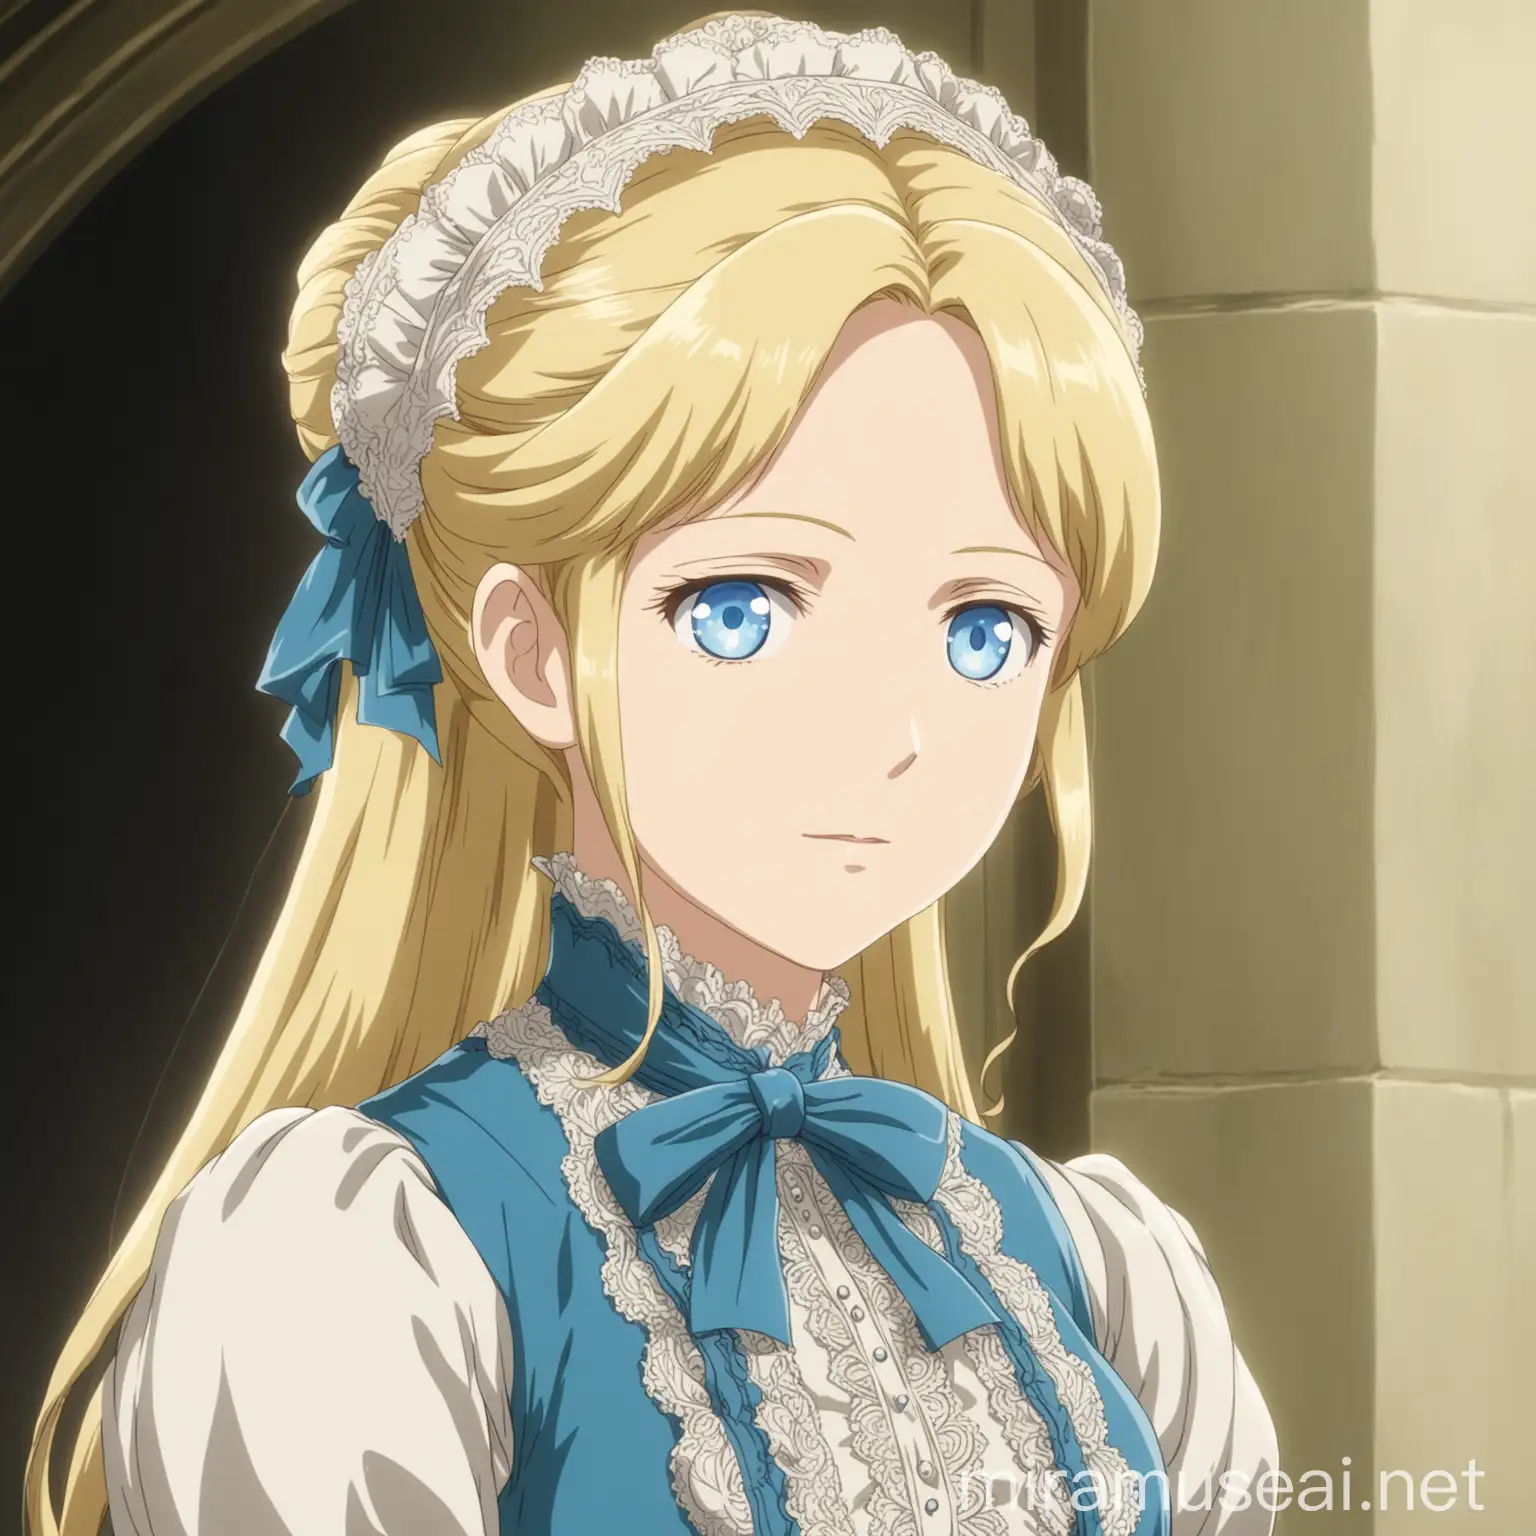 Optimistic Blonde Woman in Victorian Attire Anime Portrait